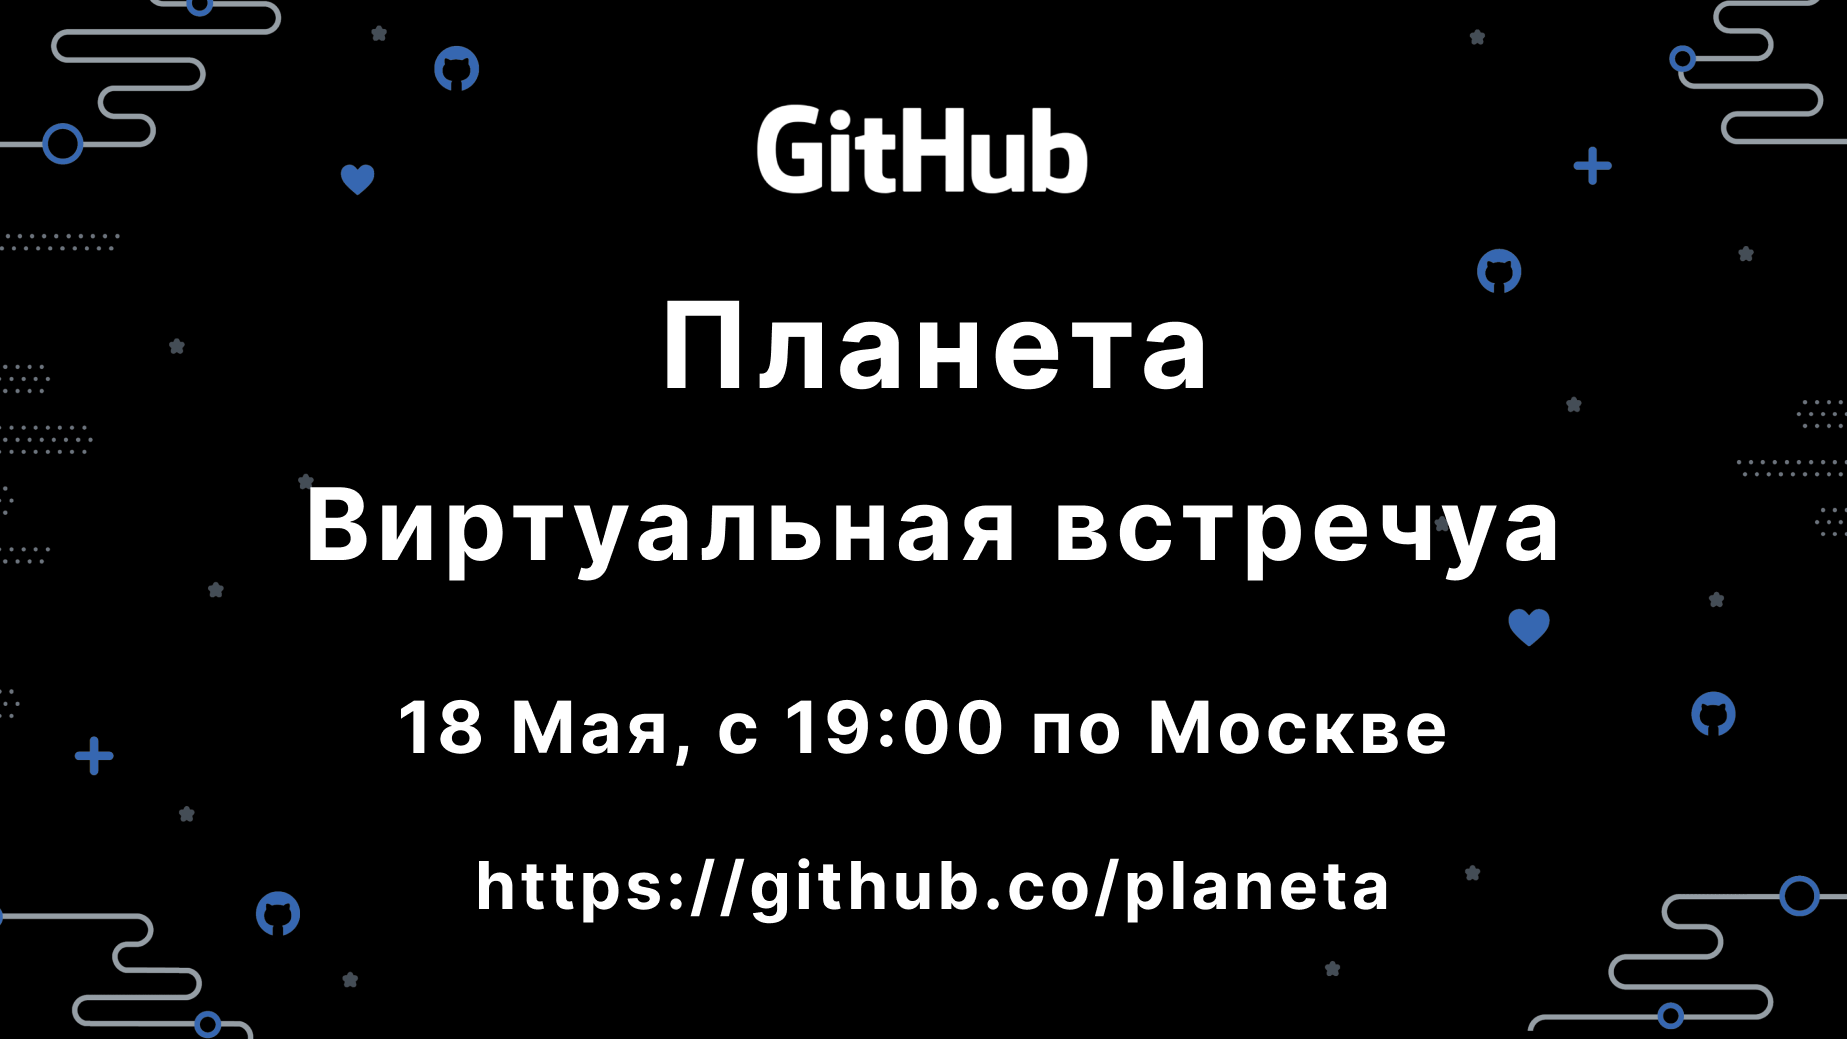 GitHub Planeta: по русски